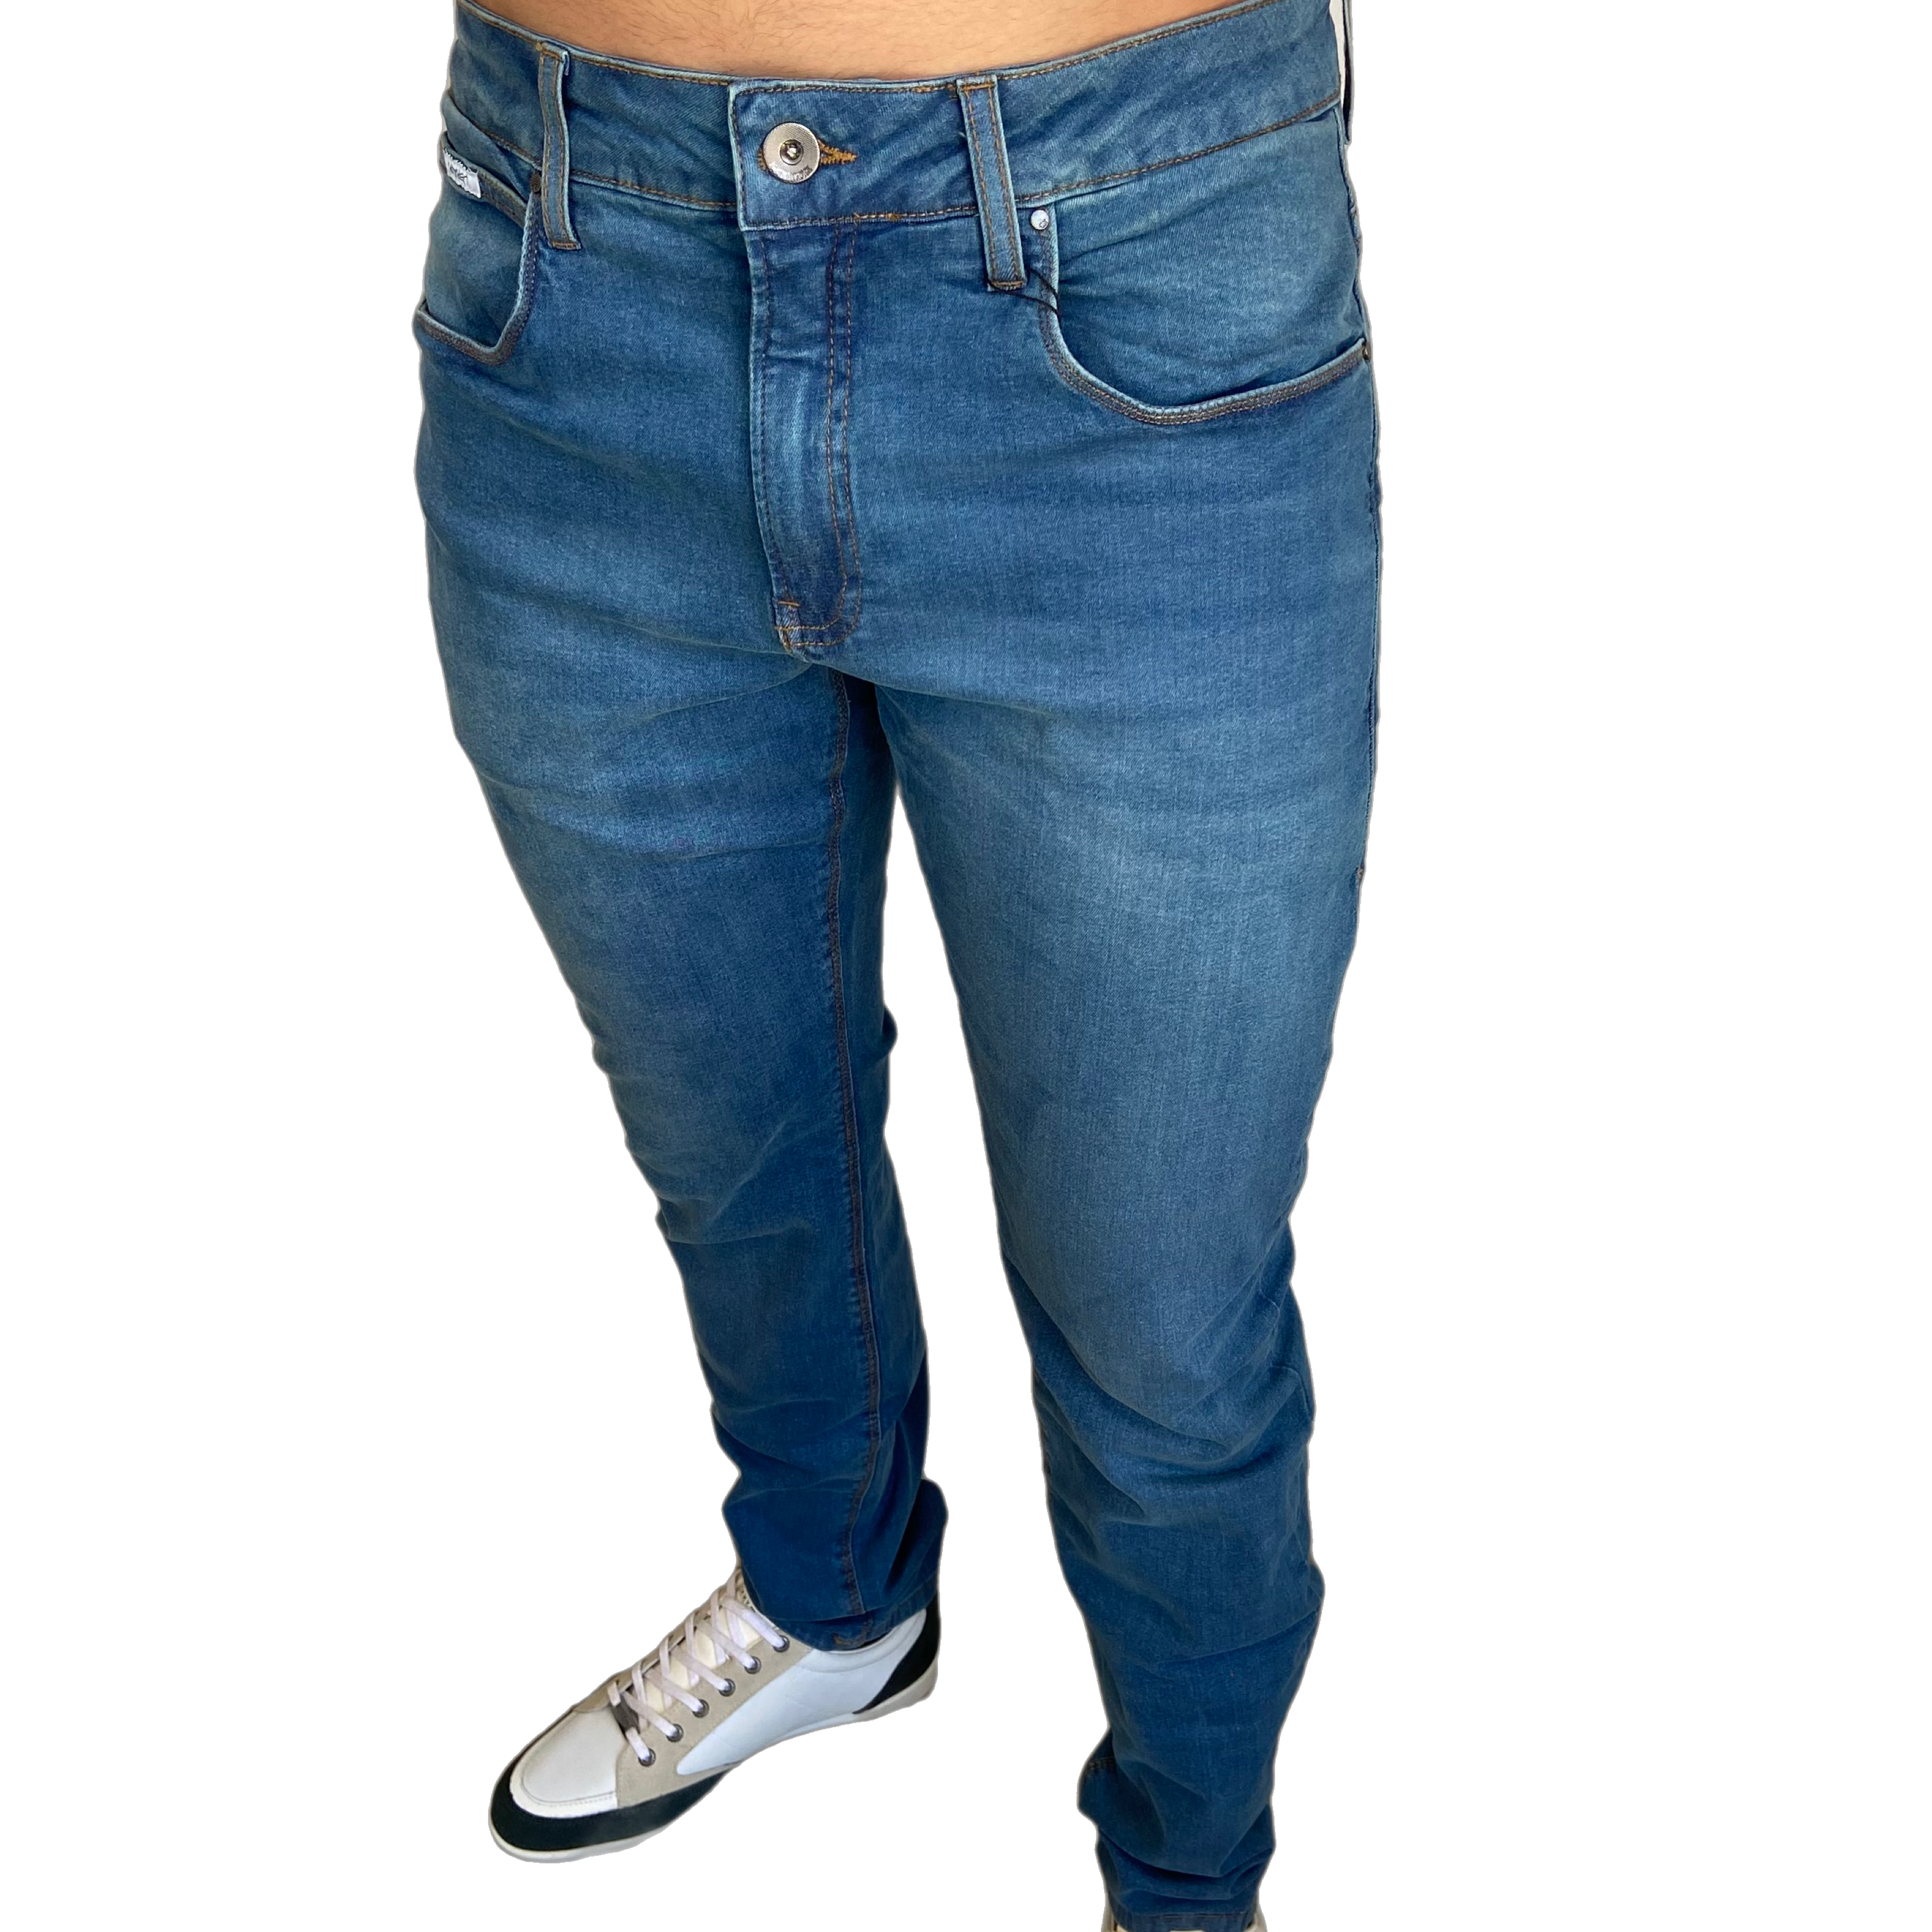 Calça jeans masculina Calvin klein